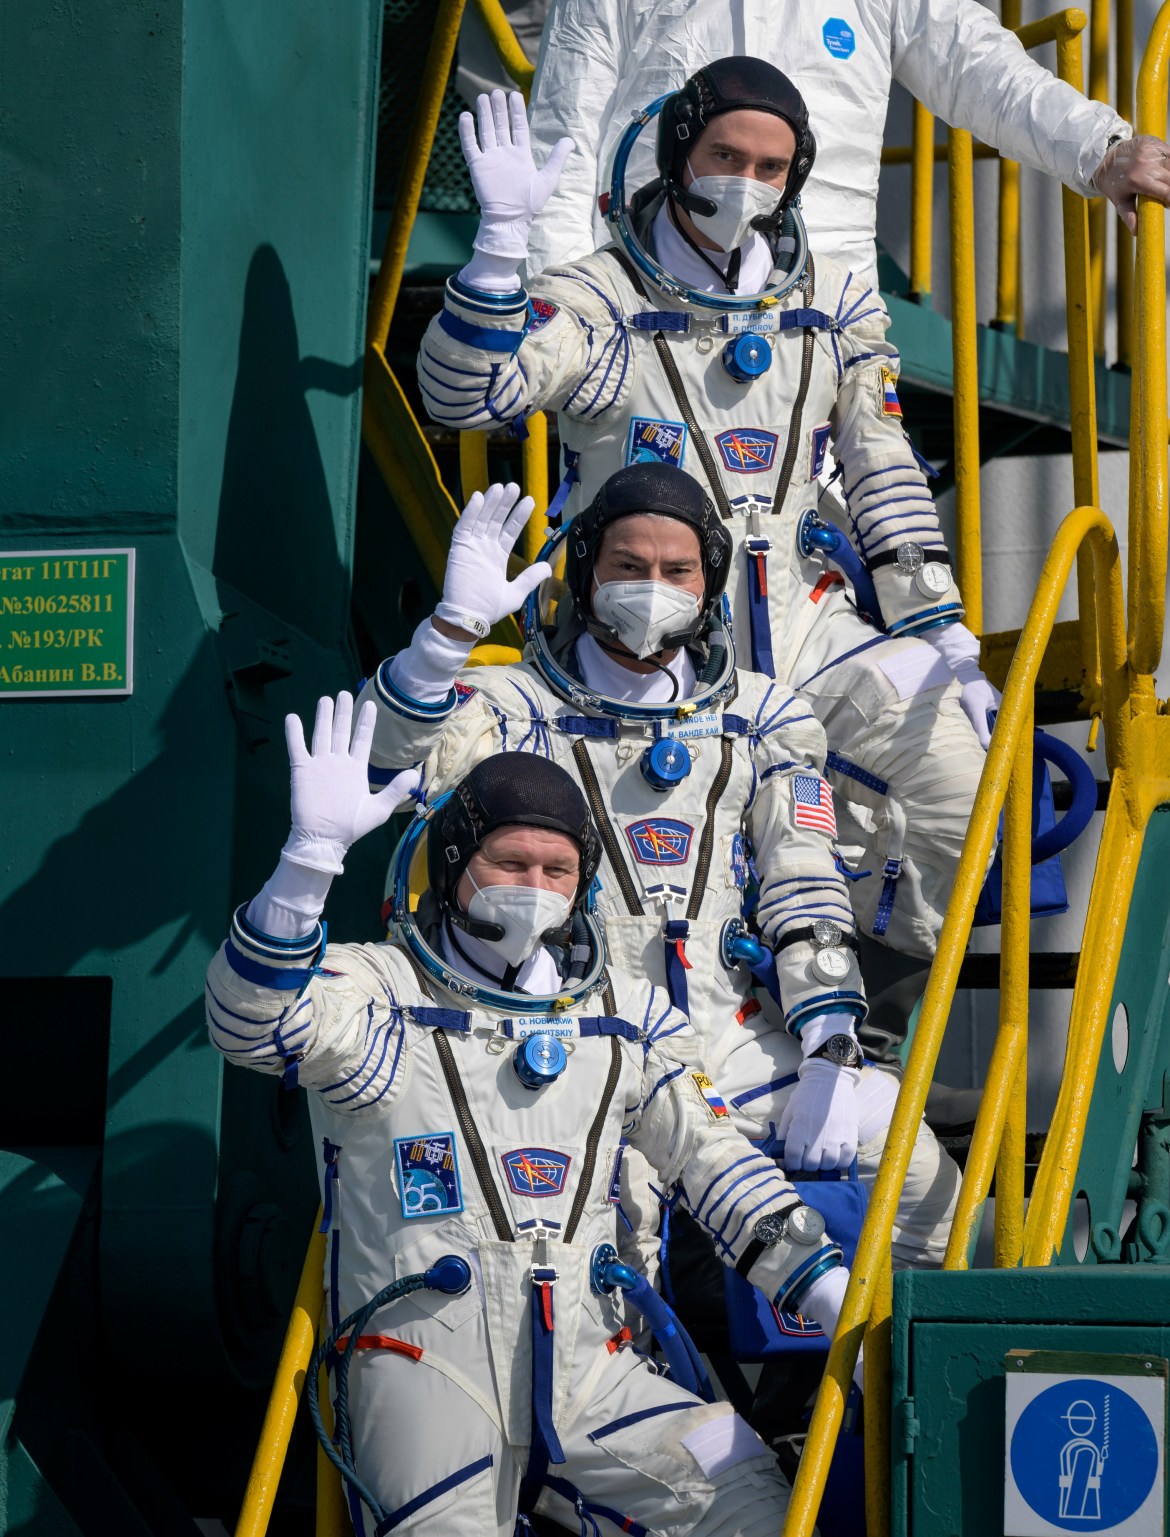 La pandémie de Corona dicte que les trois astronautes qui se dirigent vers la Station spatiale internationale s'engagent à s'isoler et à suivre les règles d'hygiène personnelle conçues pour protéger l'équipage de la station internationale de l'infection (Reuters)